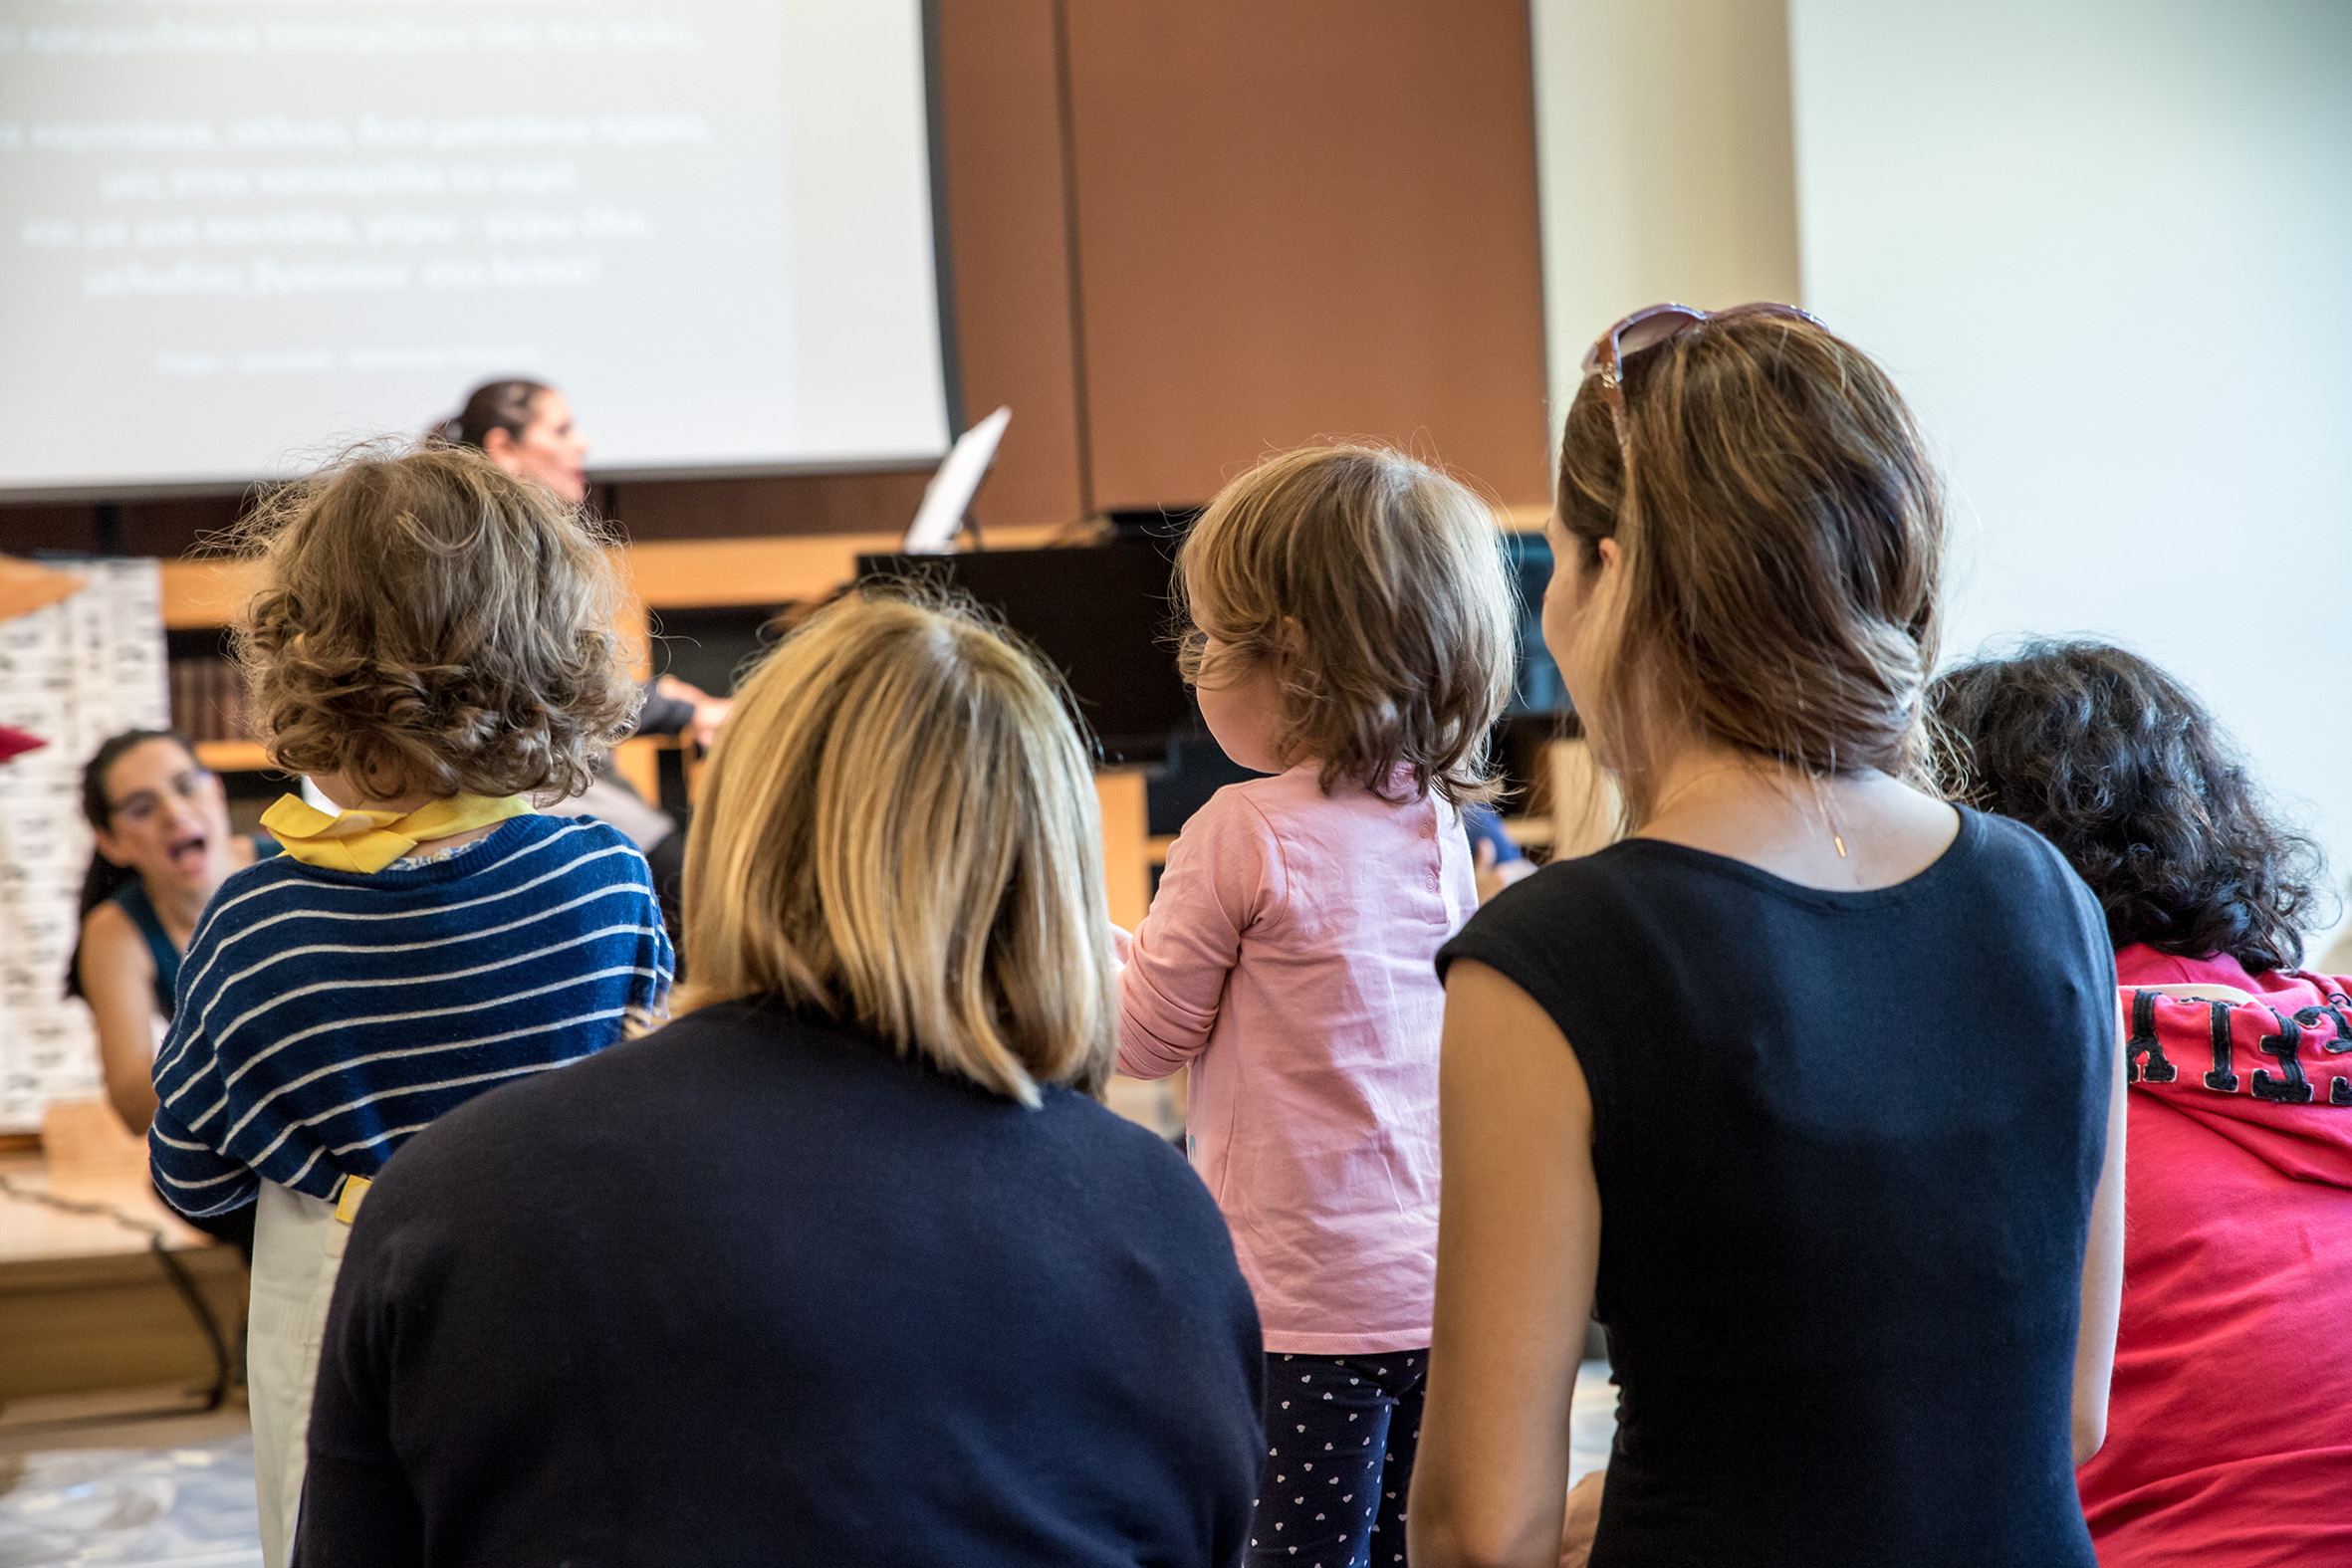 Μουσική Βιβλιοθήκη «Λίλιαν Βουδούρη»: Γιορτάζει 10 χρόνια λειτουργίας με παραστάσεις και εκπαιδευτικά προγράμματα για παιδιά